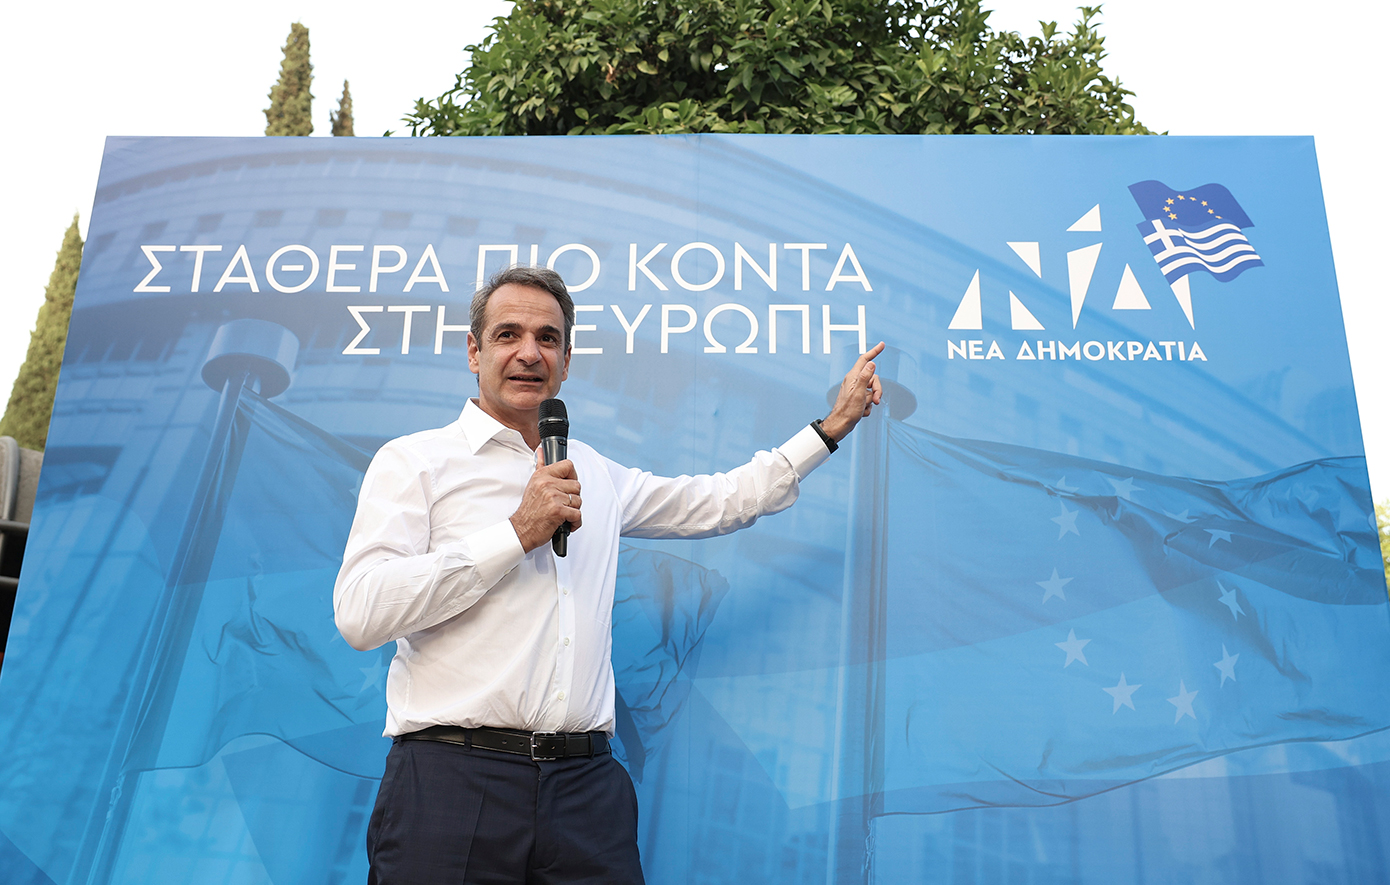 Μυστικά και ψέματα καταλογίζει σε Κασσελάκη η κυβέρνηση &#8211; Σήμερα η ομιλία του Κυριάκου Μητσοτάκη στη Θεσσαλονίκη